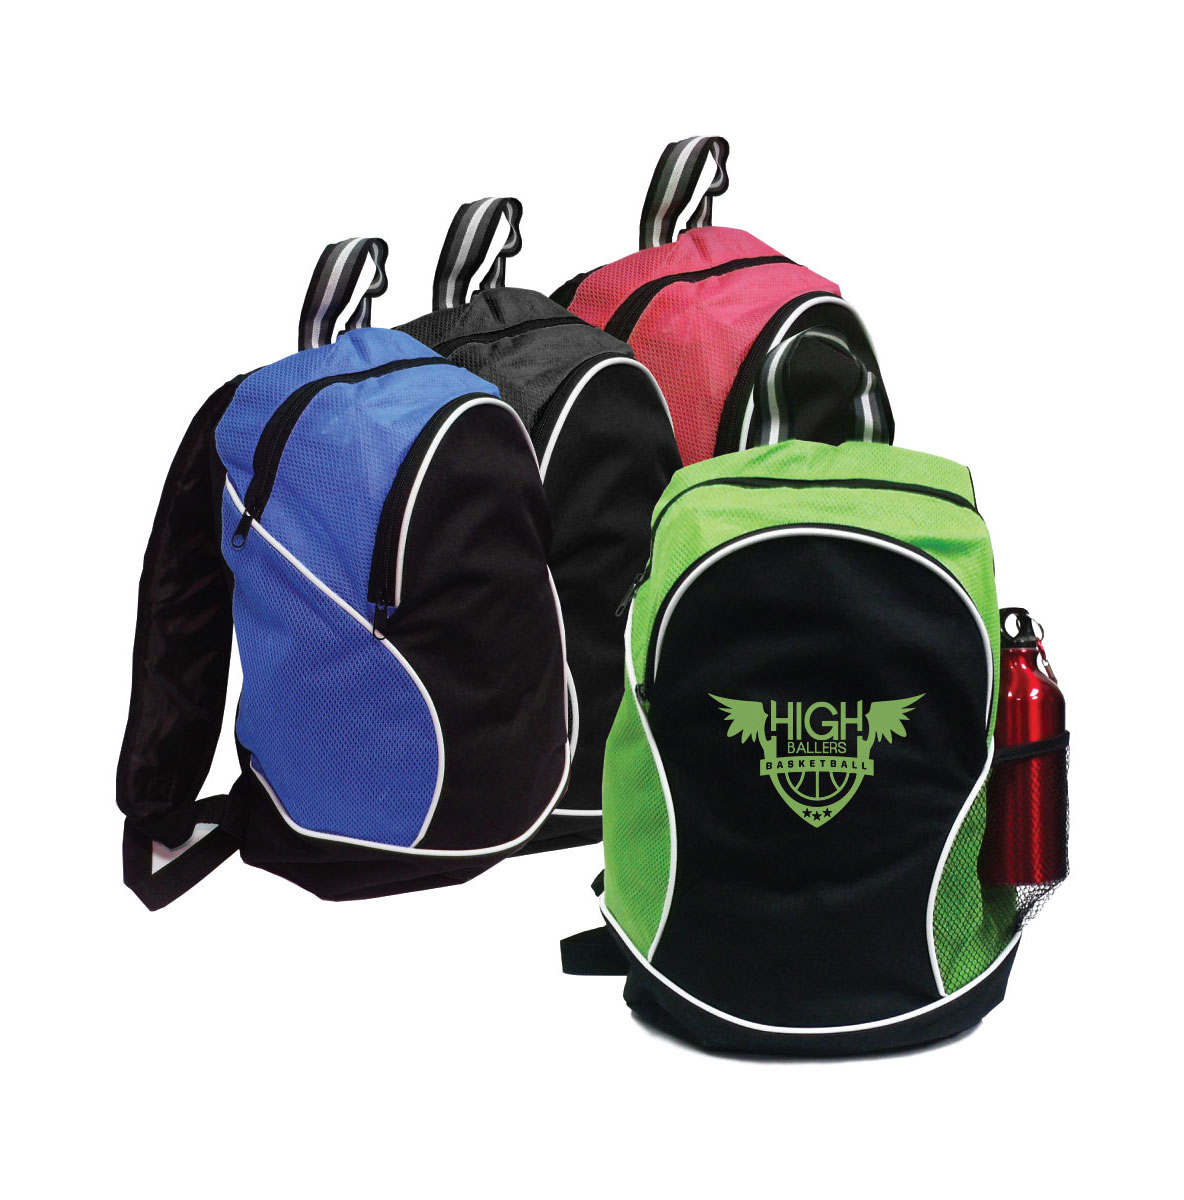 Basic Duffle Backpack